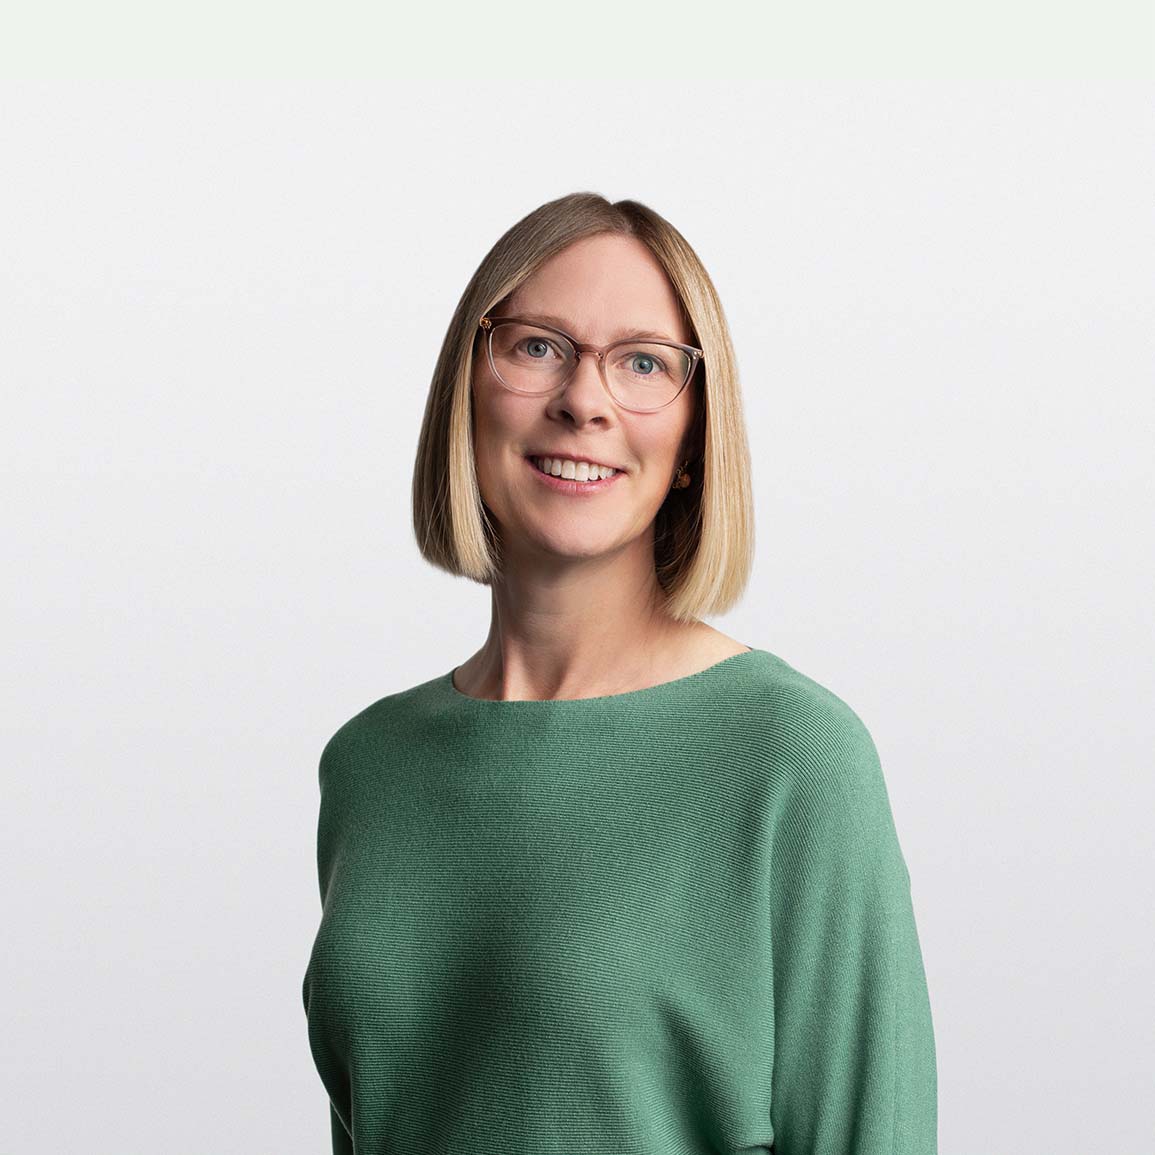 Image of Charlotte Penson senior financial advisor on white background